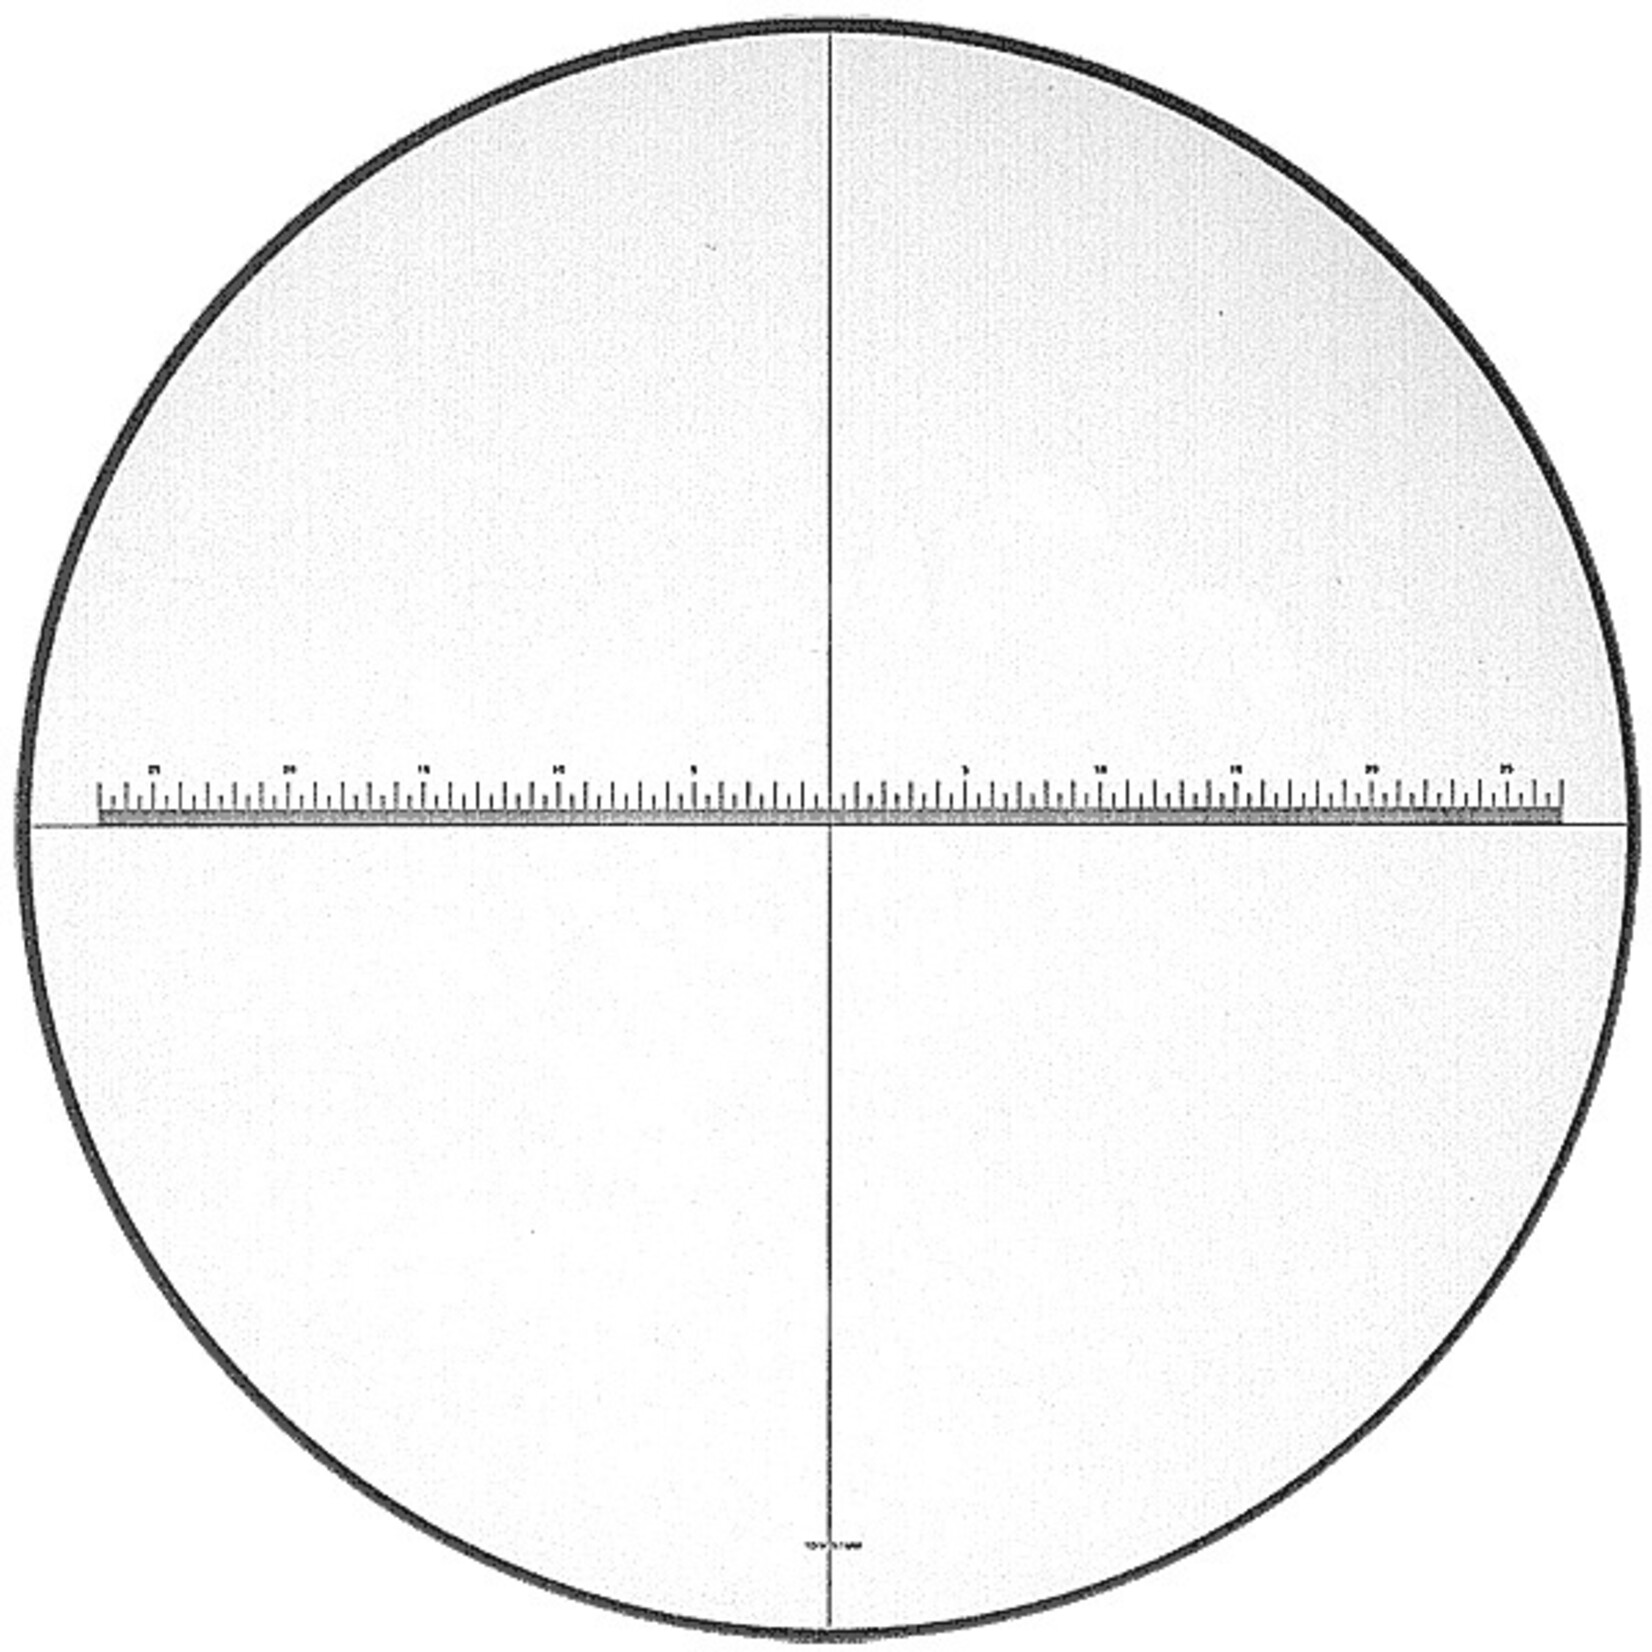 Echelle de rechange pour loupe de mesure PEAK 1990-4 avec graduation 0,1 mm